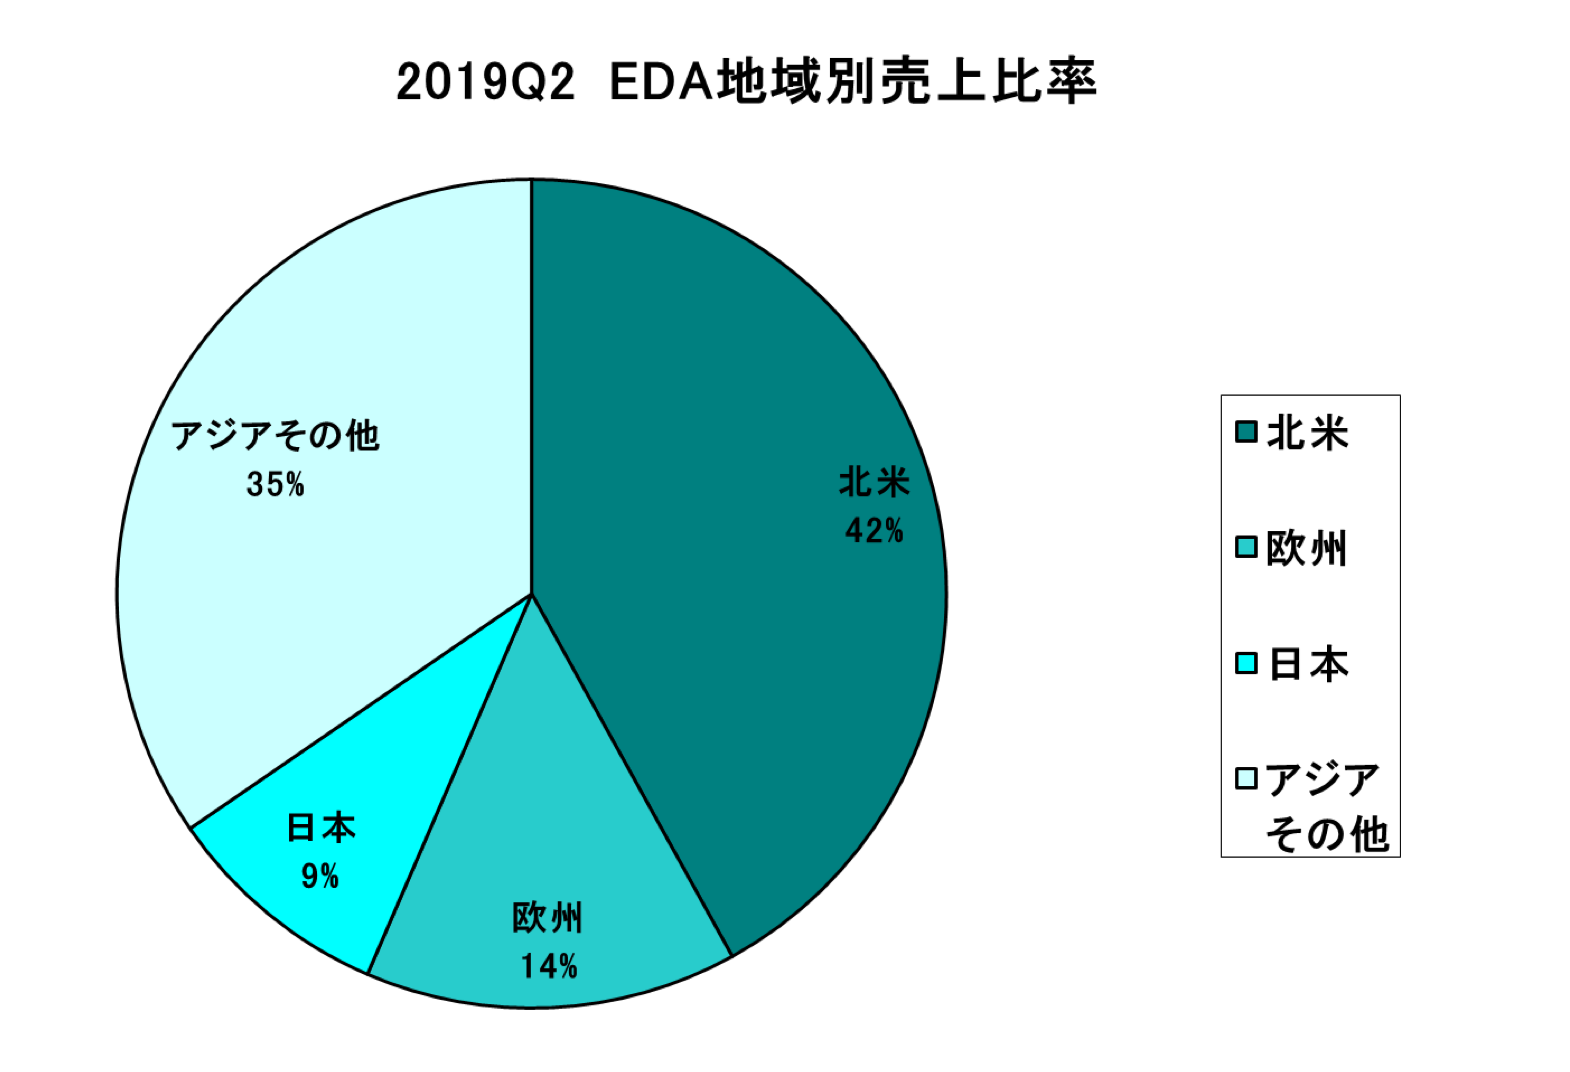 https://www.eda-express.com/%E3%82%B9%E3%82%AF%E3%83%AA%E3%83%BC%E3%83%B3%E3%82%B7%E3%83%A7%E3%83%83%E3%83%88%202019-09-18%208.53.02.png